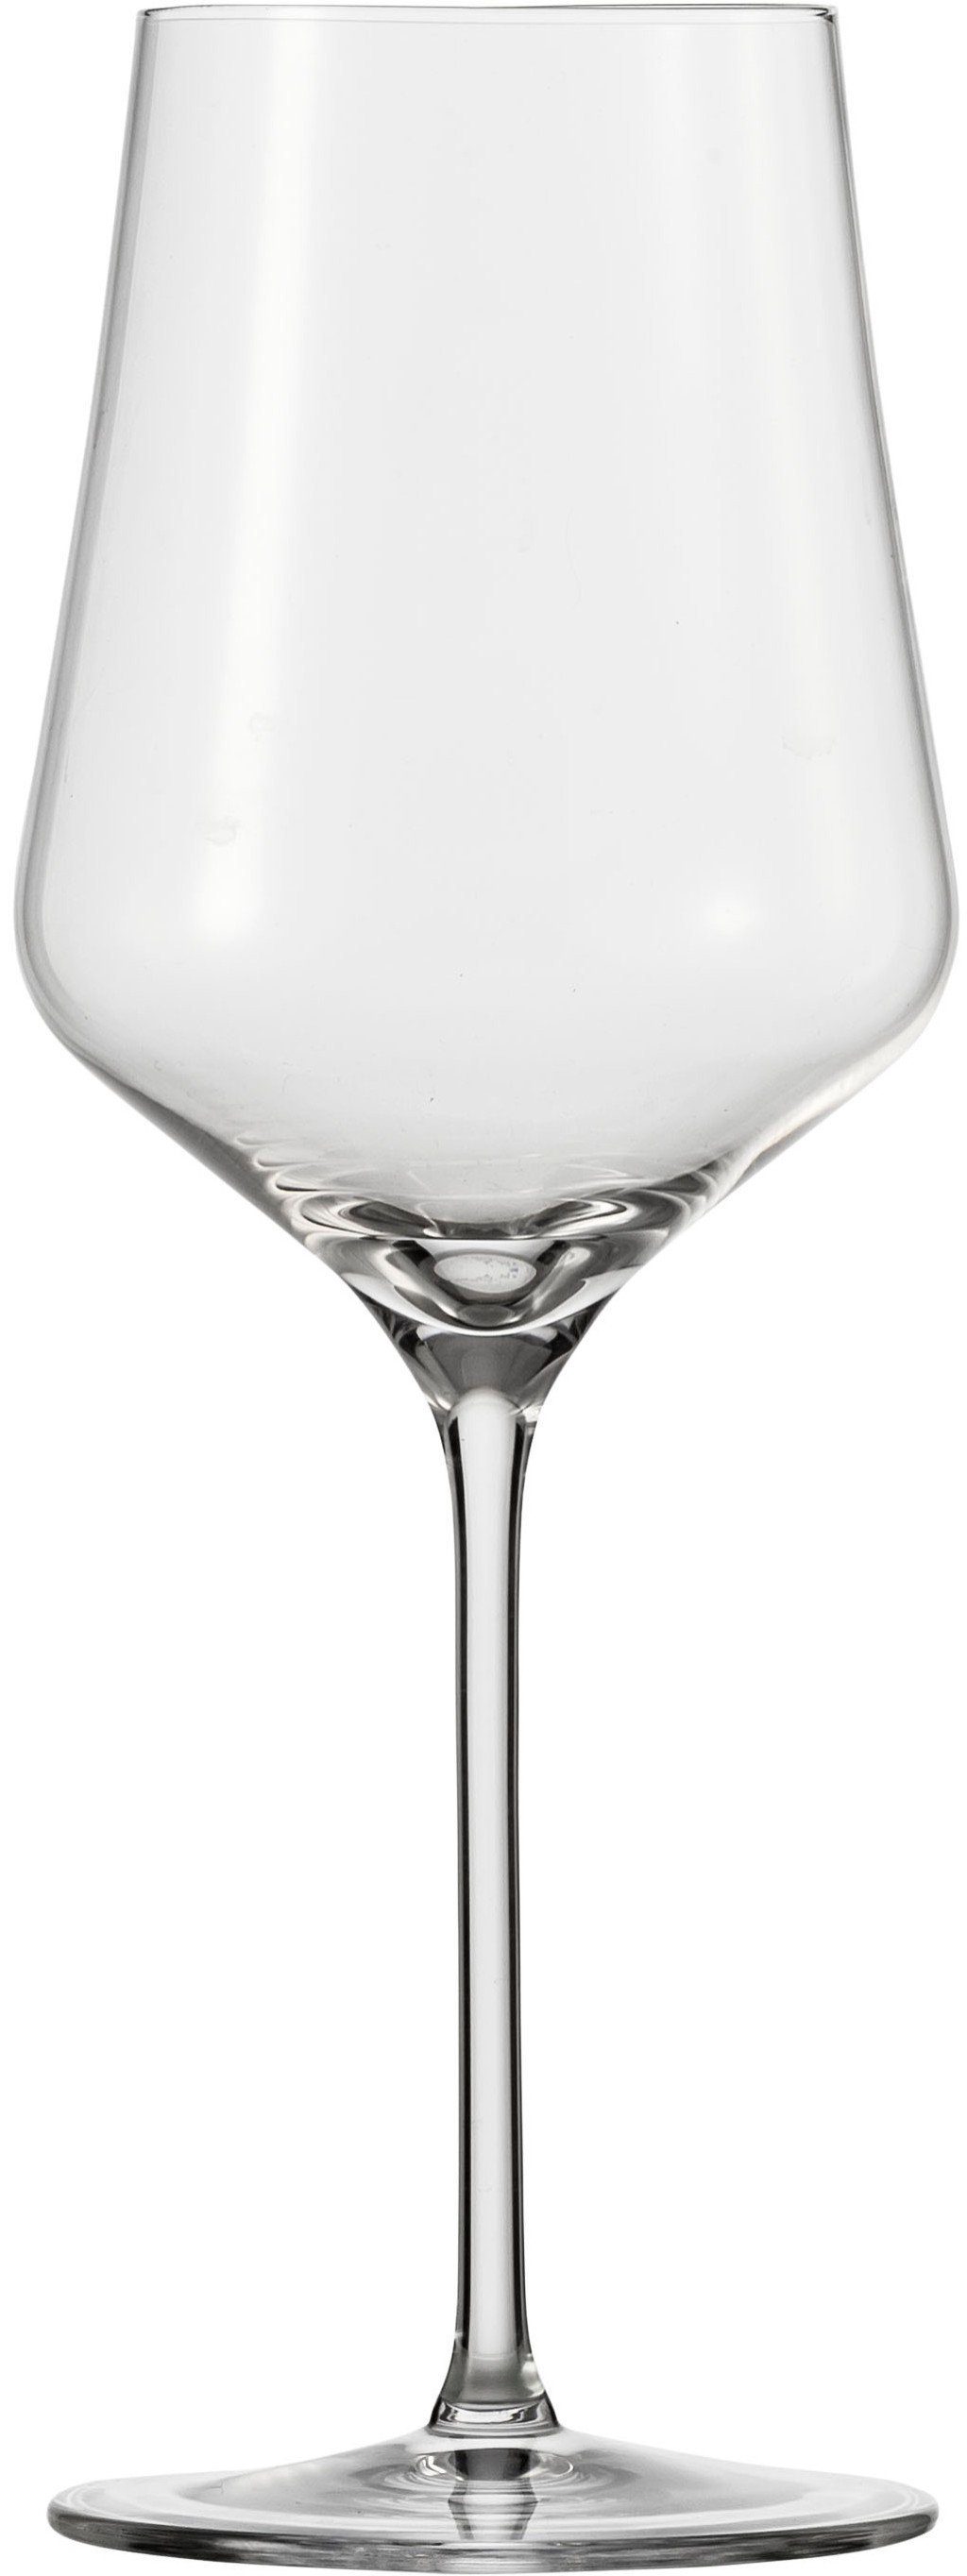 Eisch Rotweinglas Rotweinglas 518/2 - 2 Stück im Geschenkkarton, Glas